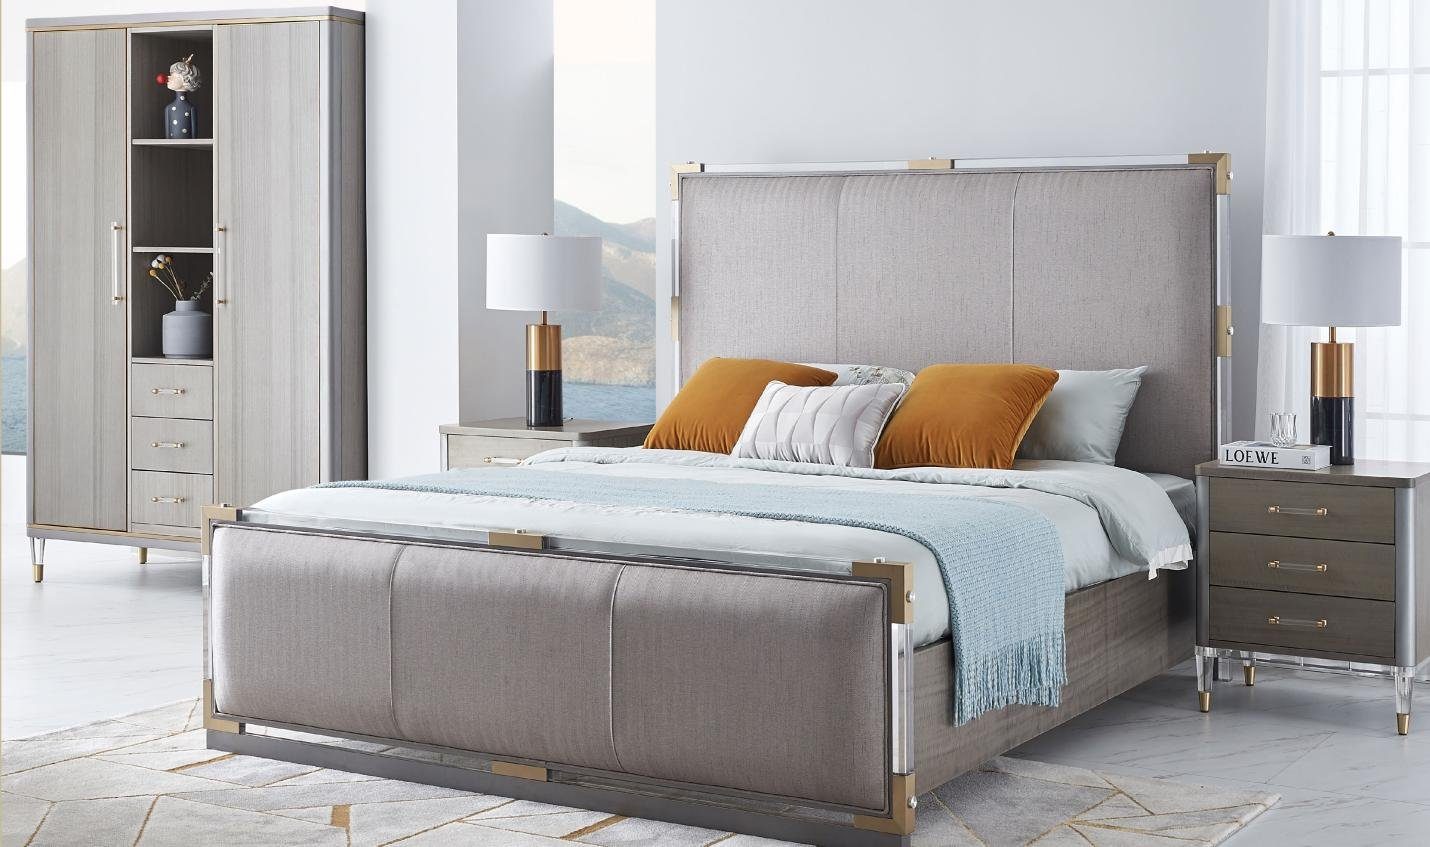 JVmoebel Bett, Design Polsterbett Bett Betten Doppel Ehe Modernes 180x200cm